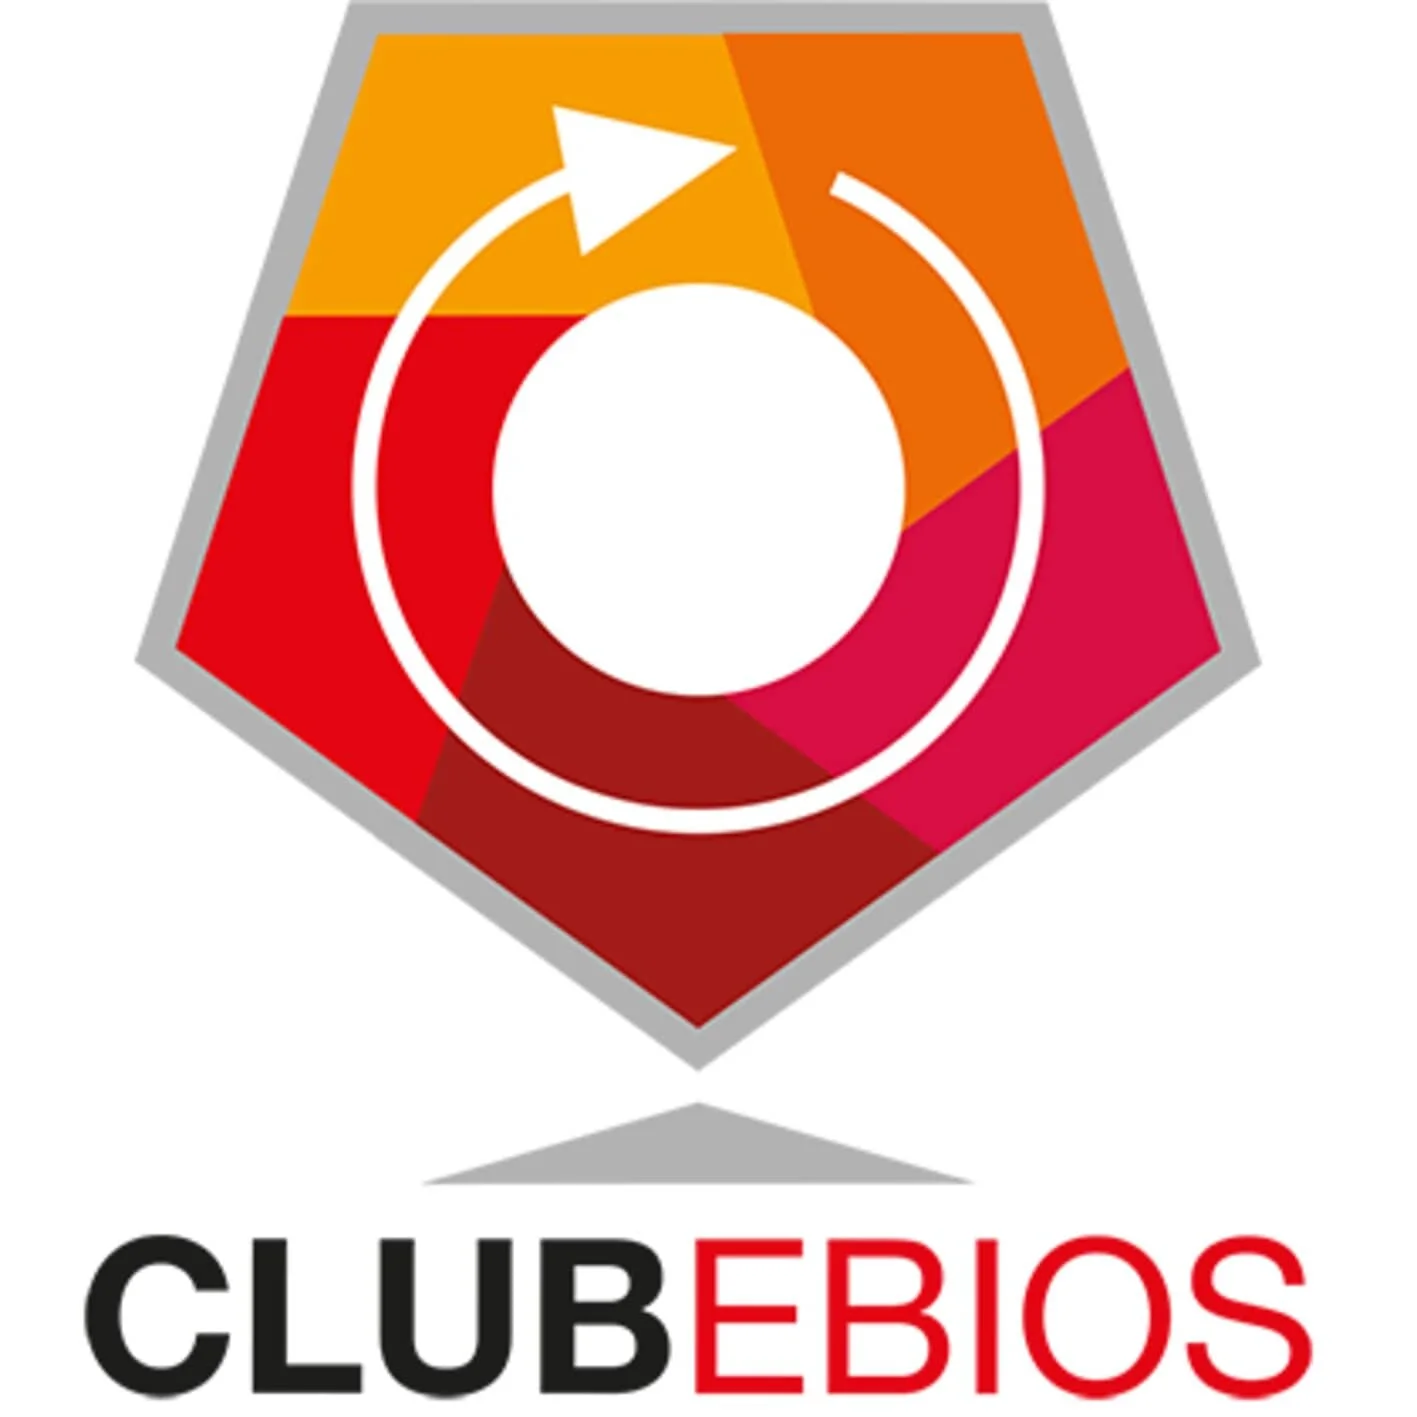 EBIOS CLUB LOGO